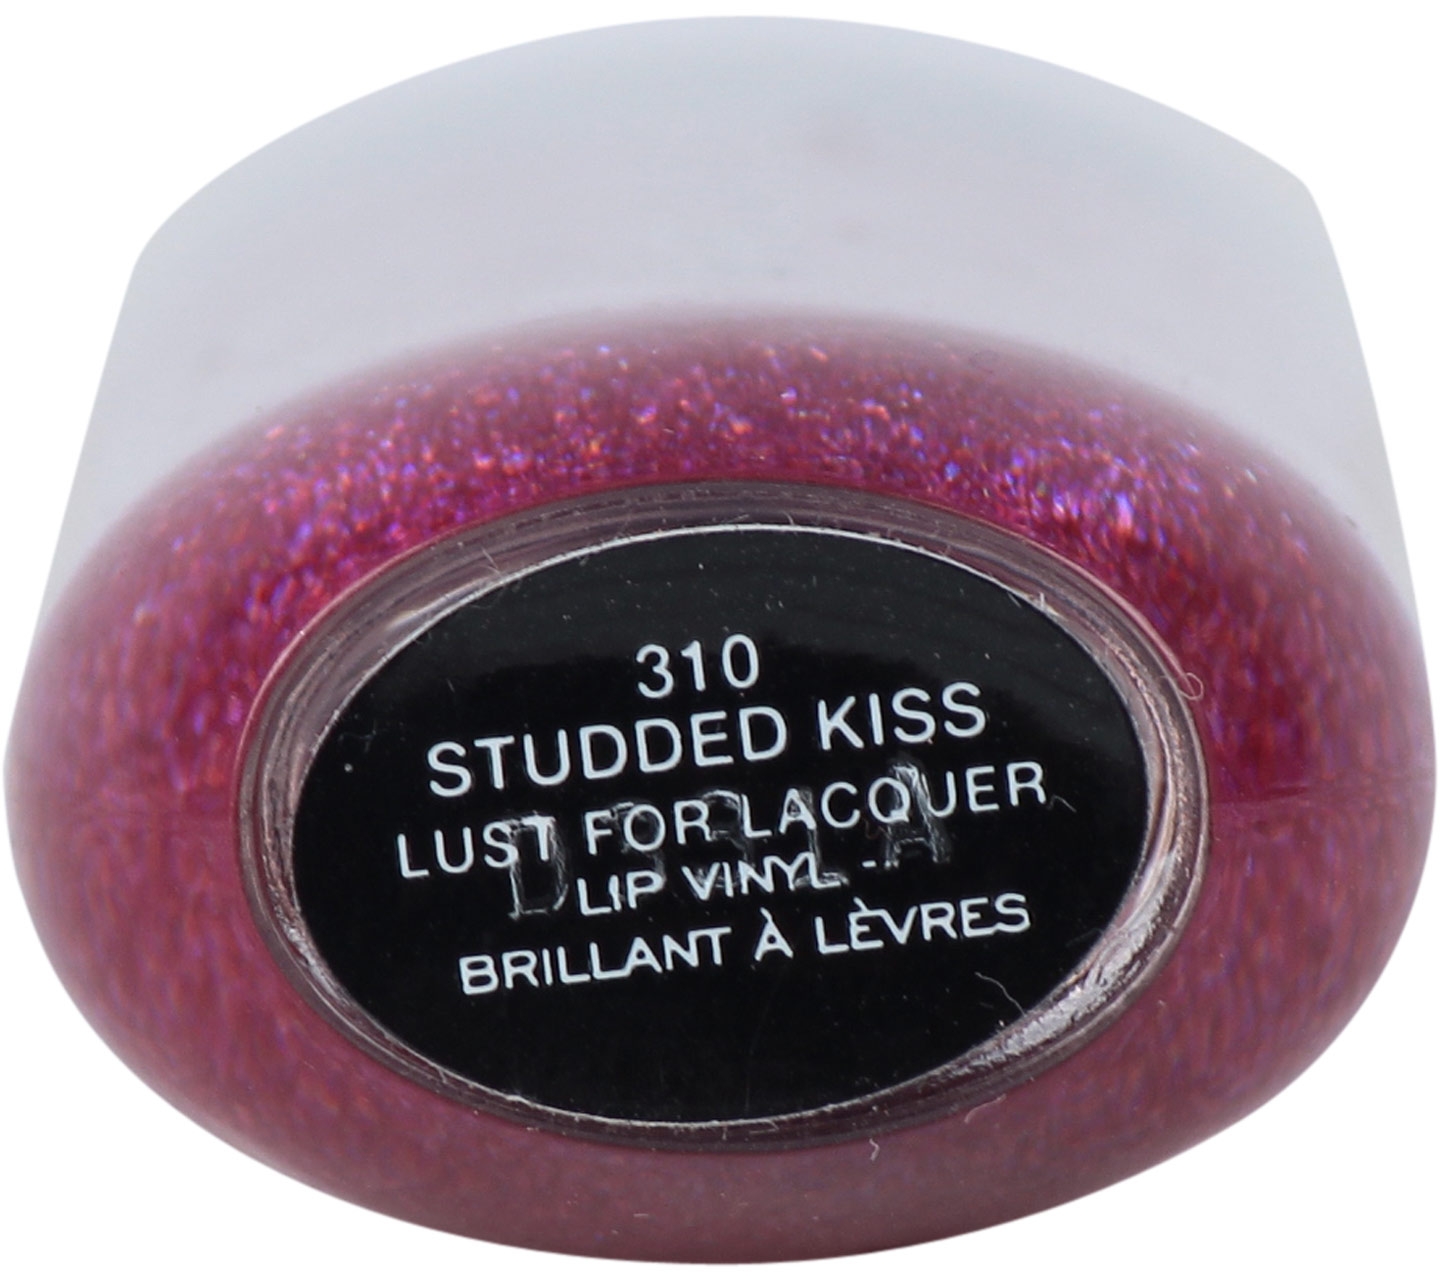 Marc Jacobs 310 Studded Kiss Lip Vinyl Lips